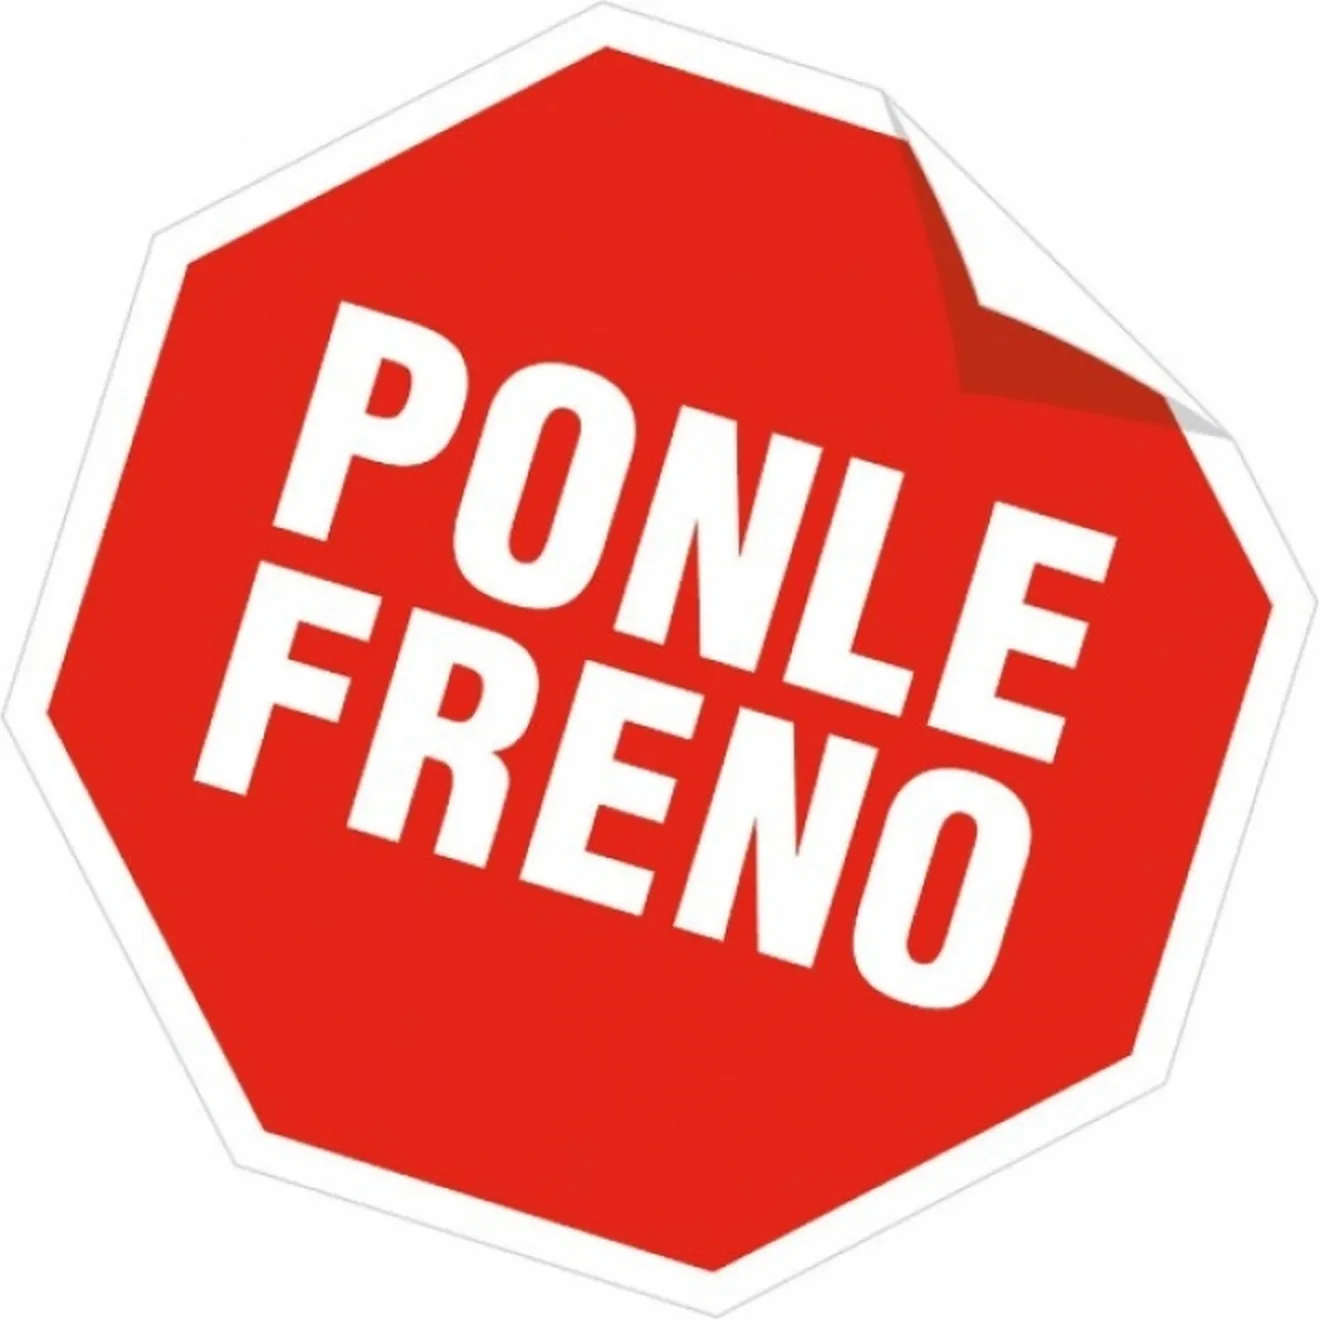 La plataforma Ponle Freno tiene en marcha una campaña para la colocación de radares en puntos negros